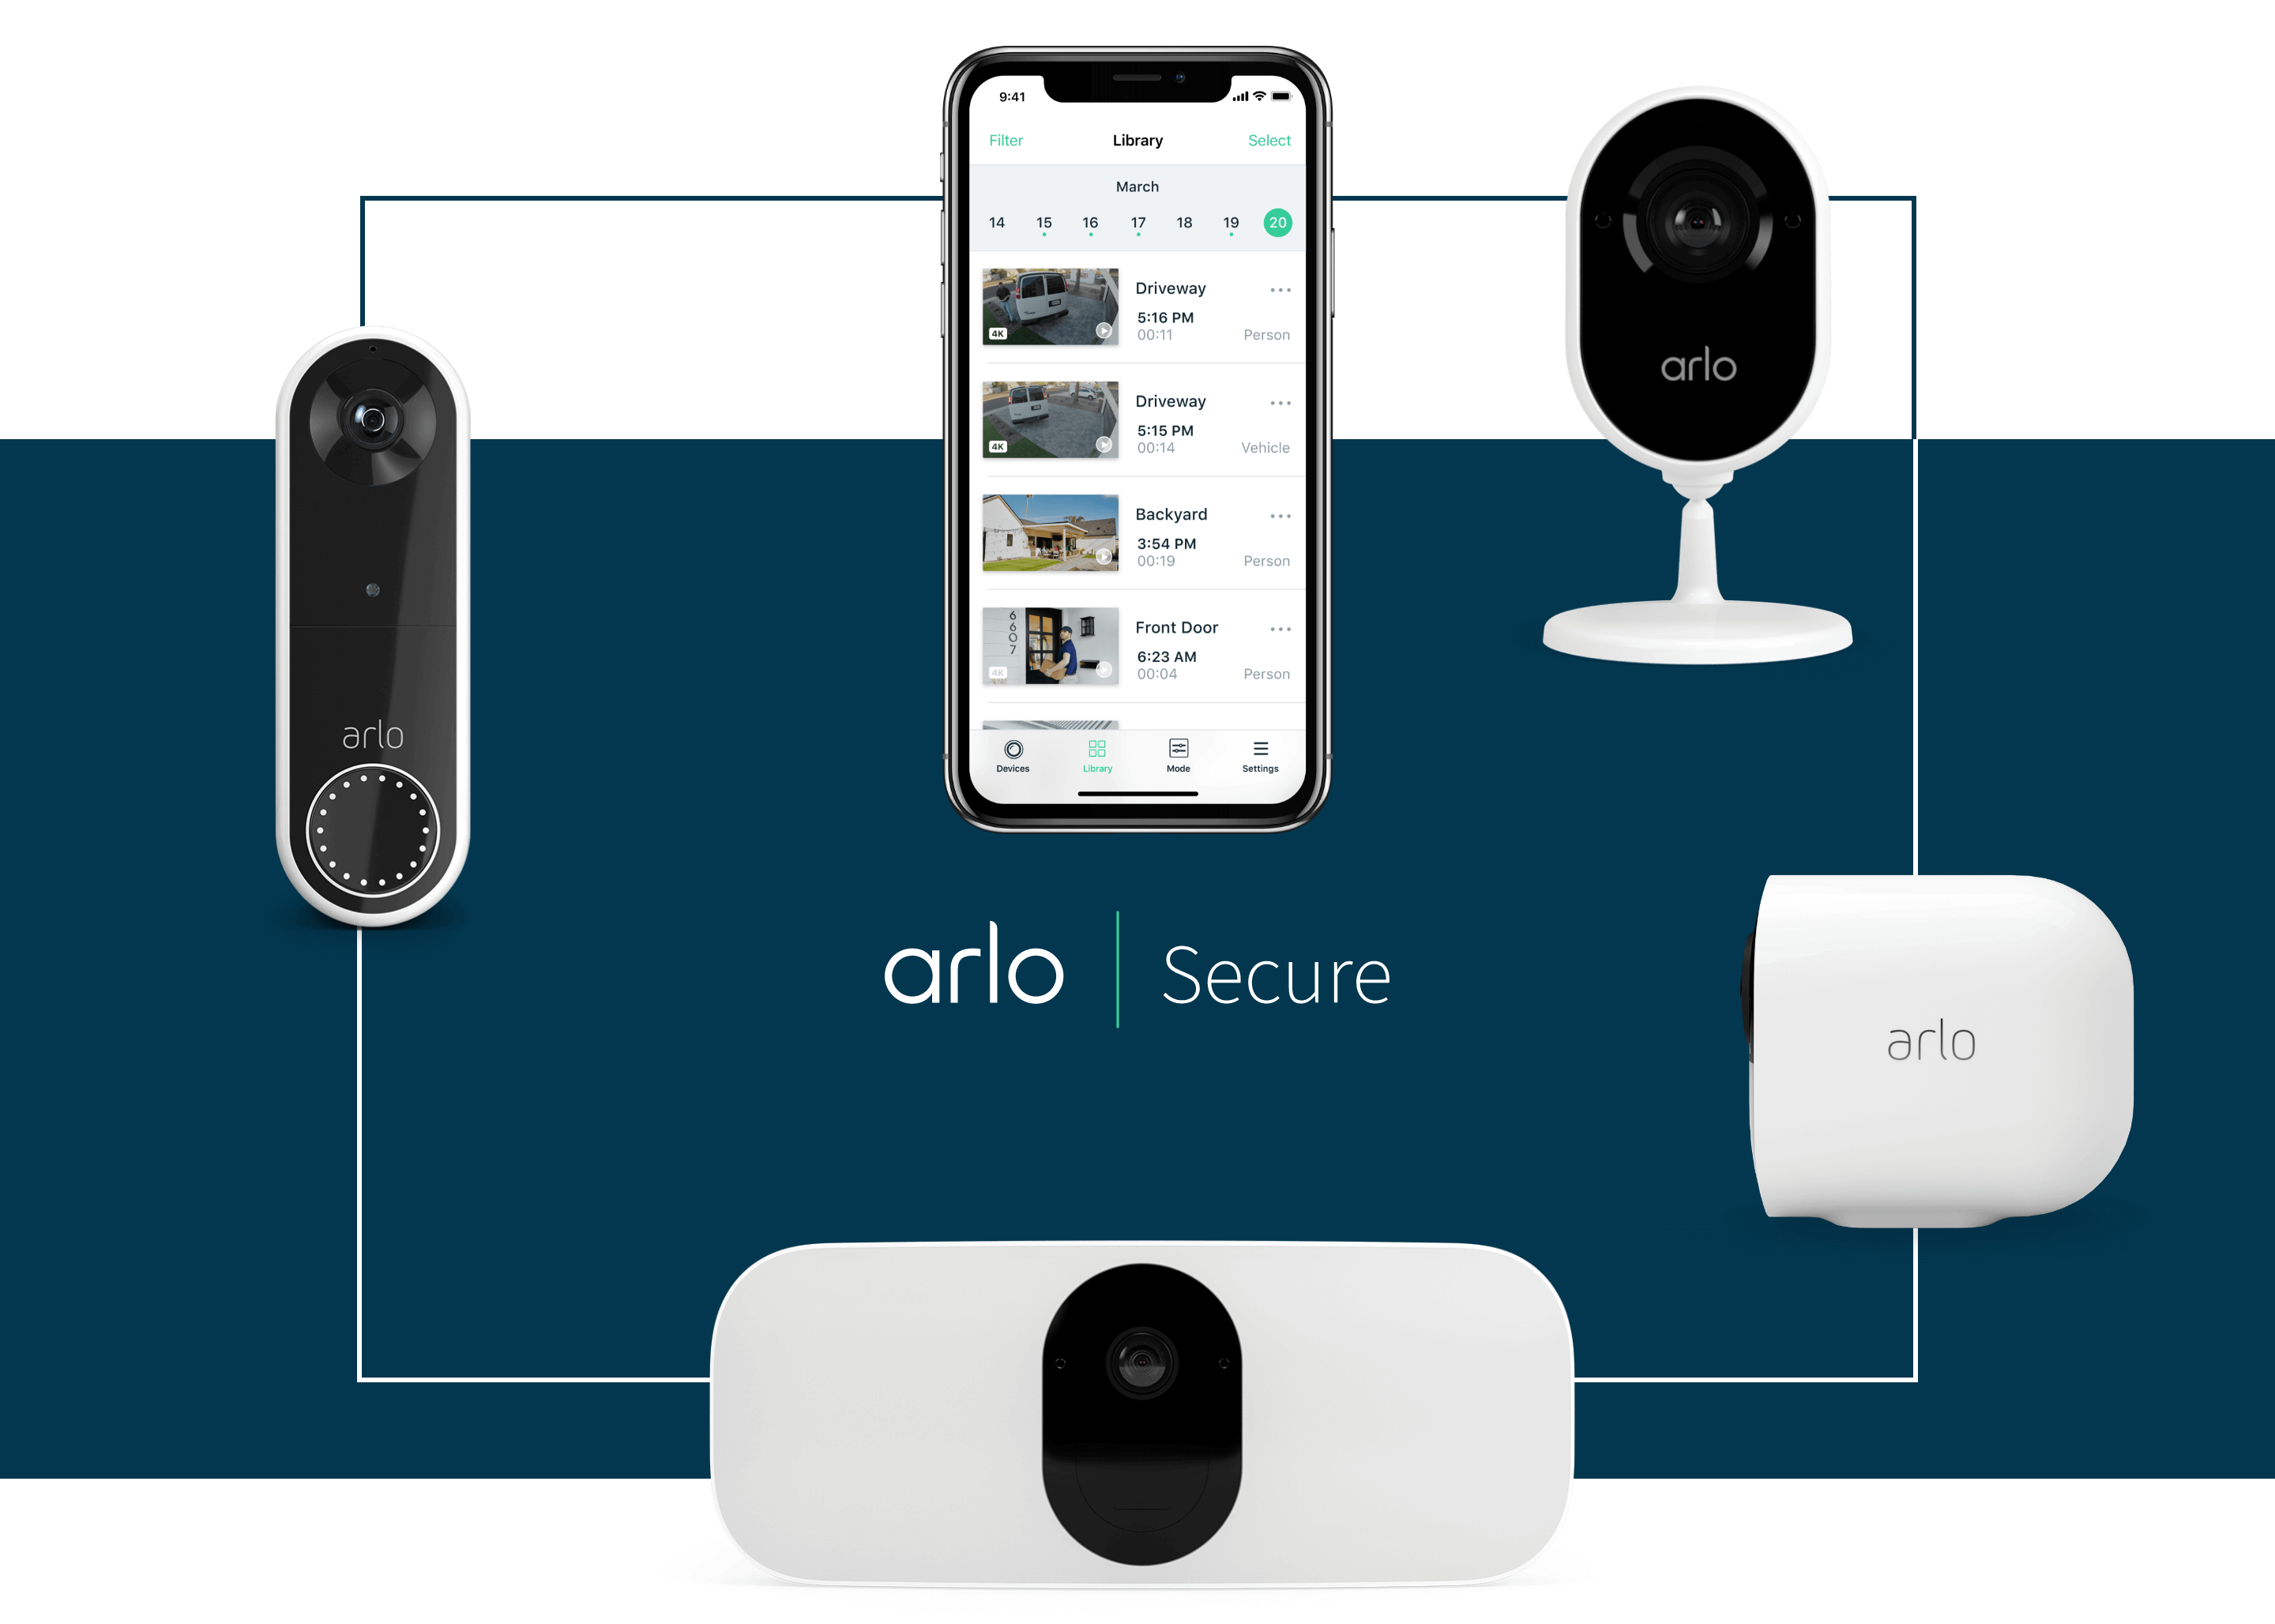 Arlo-abonnemang ger dig AI- driven hemövervakning för mindre än kostnaden för en kopp kaffe